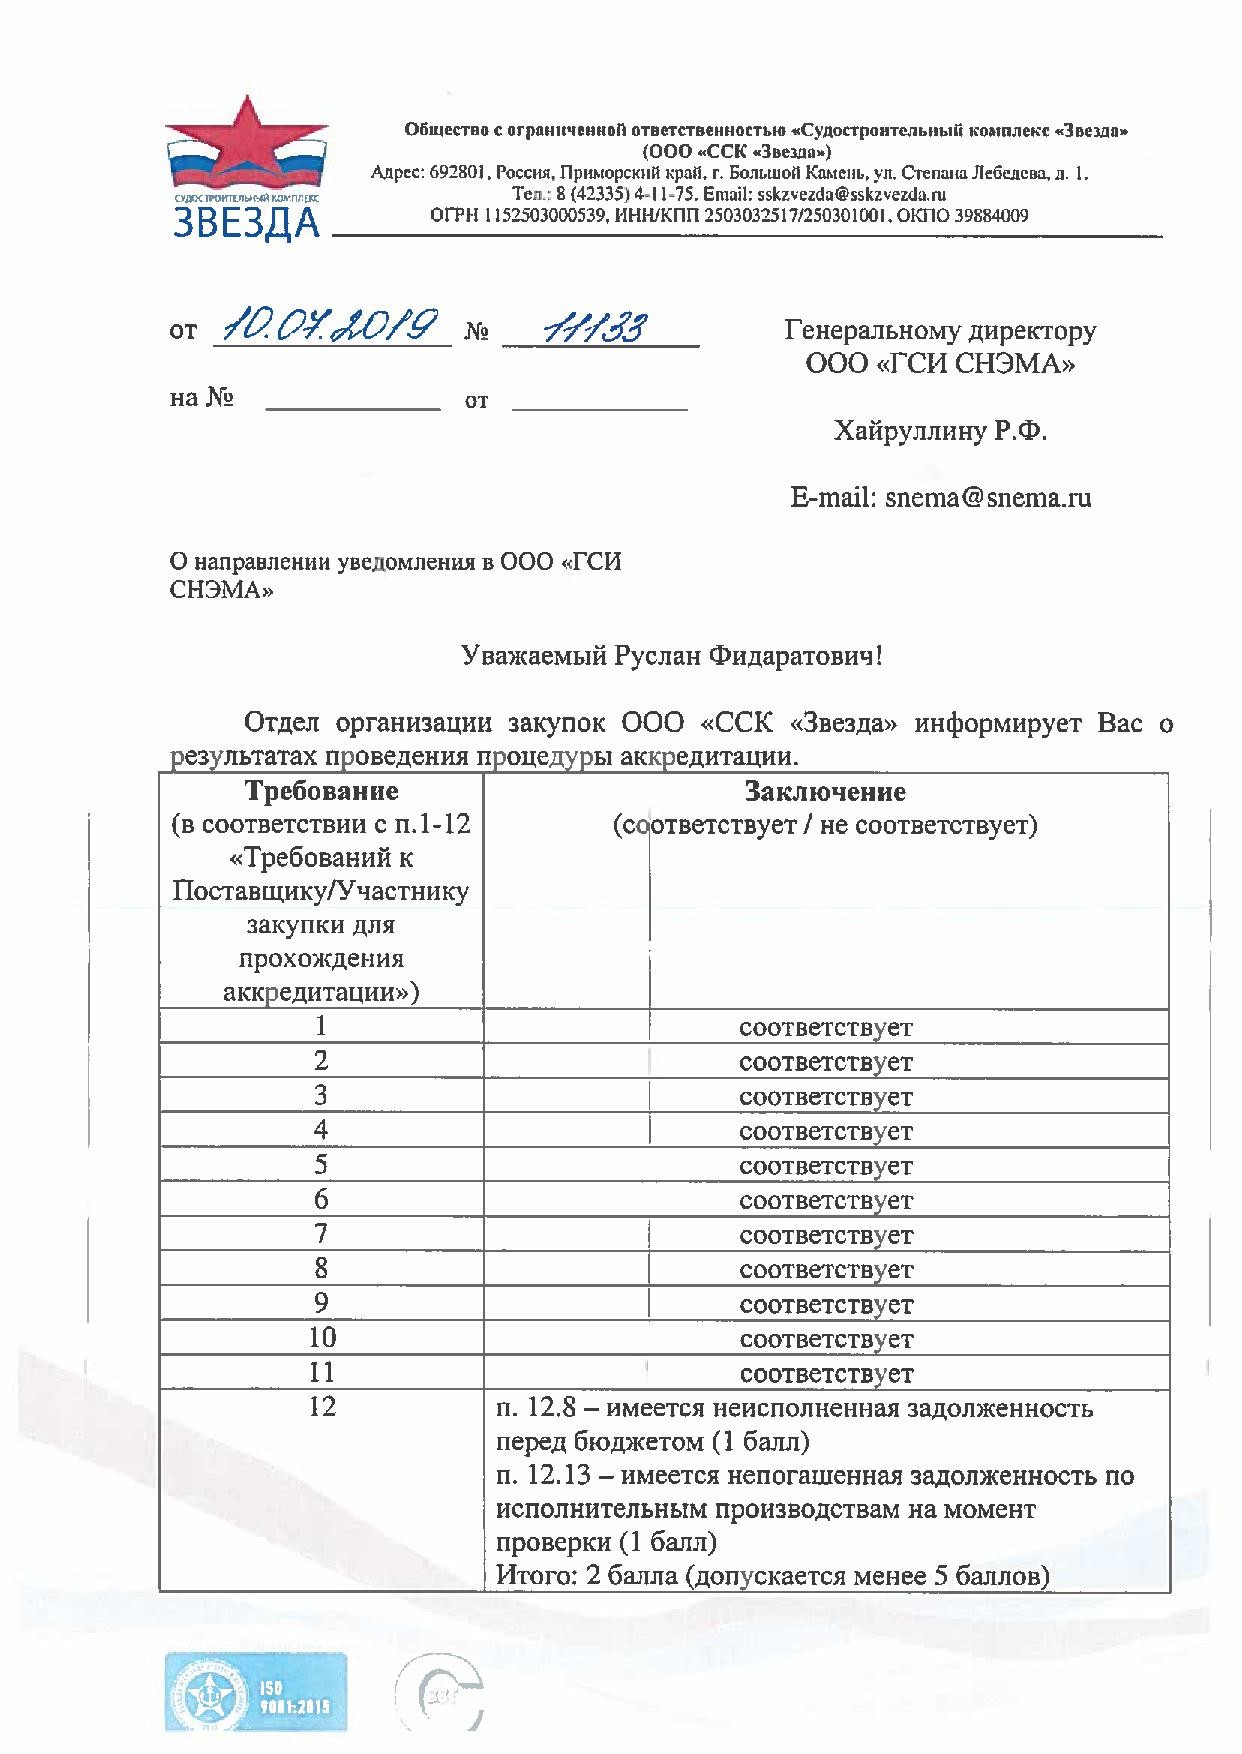 Аккредитациия ССК ЗВЕЗДА_1